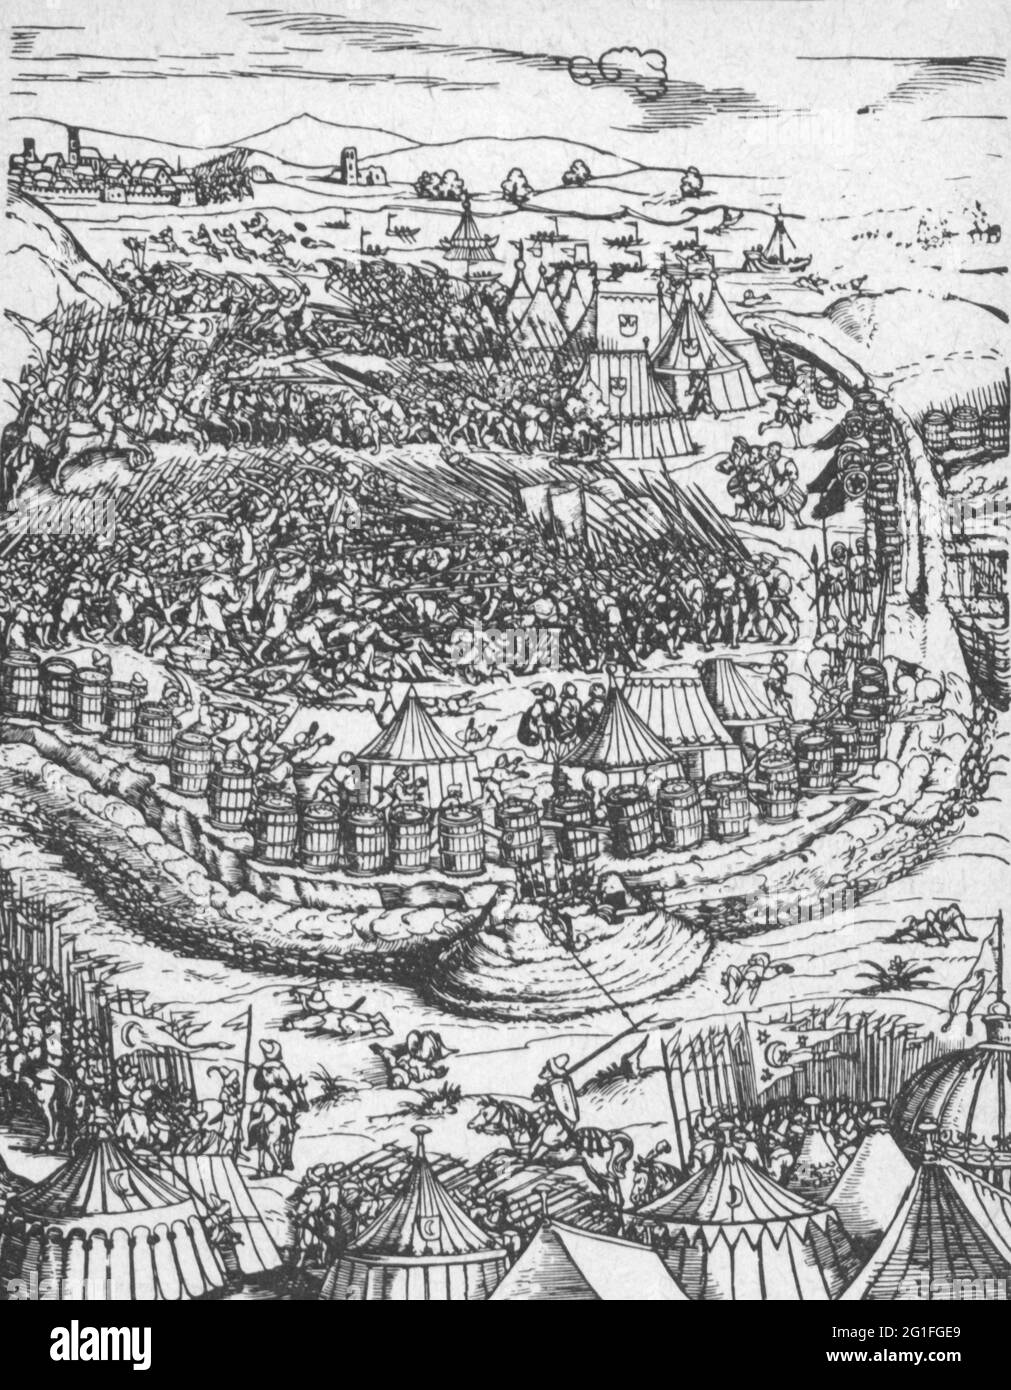 Erster österreichischer Türkenkrieg 1526 - 1555, Belagerung von Ofen, 1541, Angriff auf das Lager der kaiserlichen Truppen, DAS KÜNSTLERSCHUTZRECHT MUSS NICHT GELÖSCHT WERDEN Stockfoto